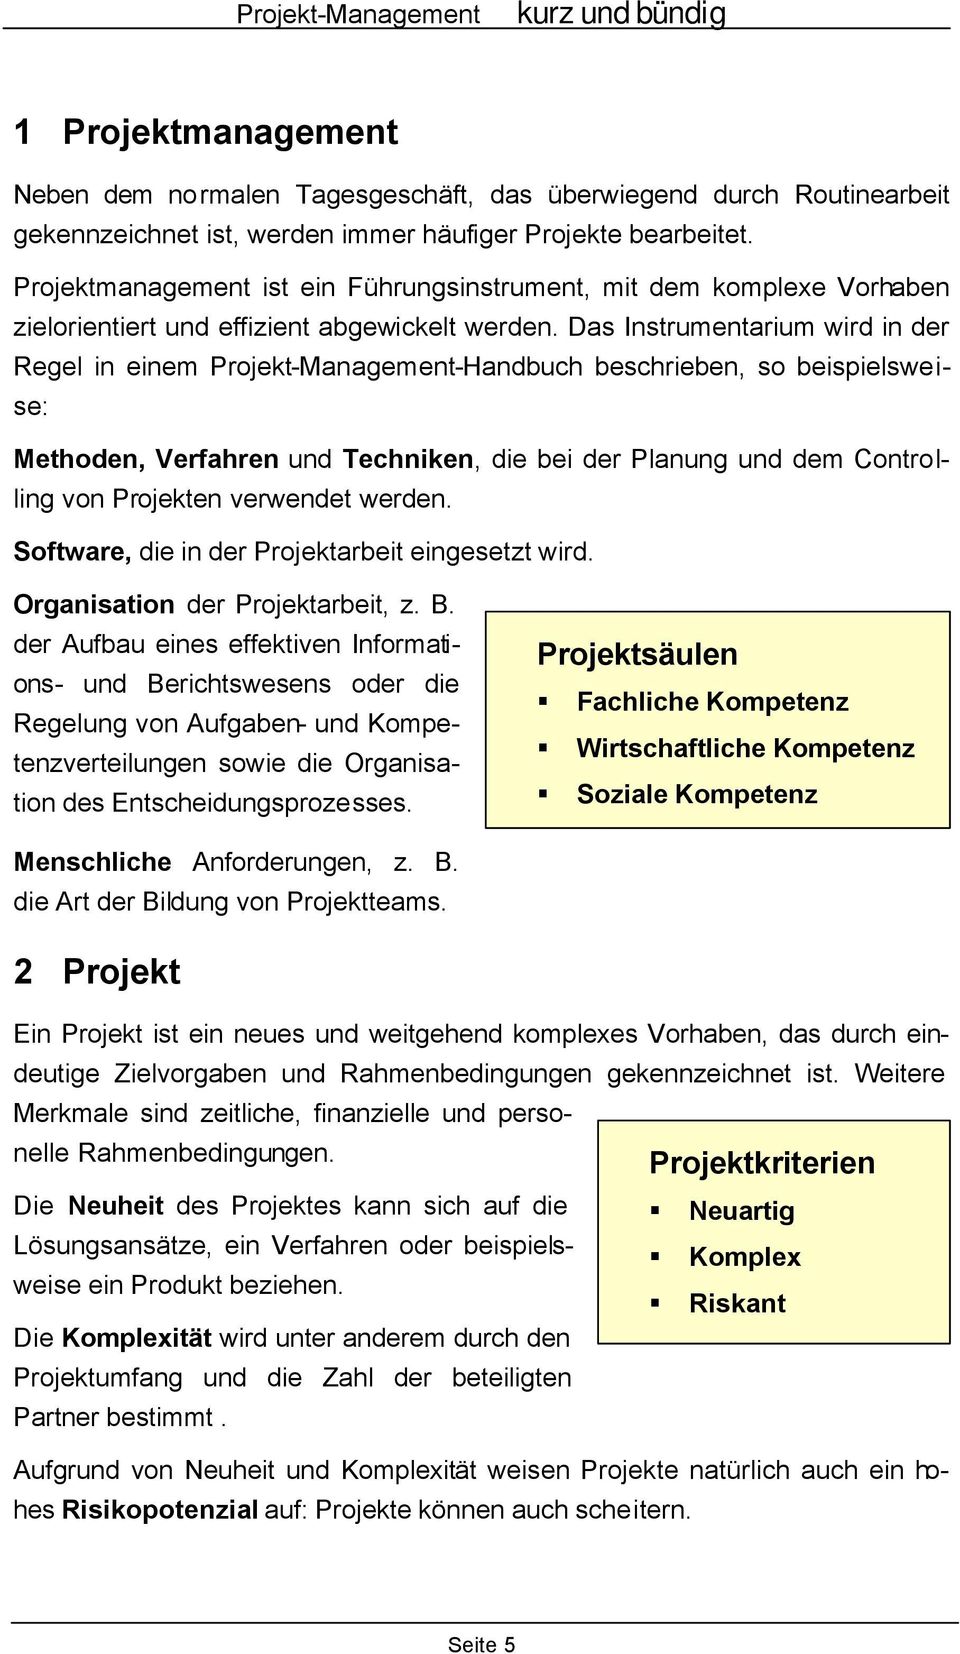 Das Instrumentarium wird in der Regel in einem Projekt-Management-Handbuch beschrieben, so beispielsweise: Methoden, Verfahren und Techniken, die bei der Planung und dem Controlling von Projekten